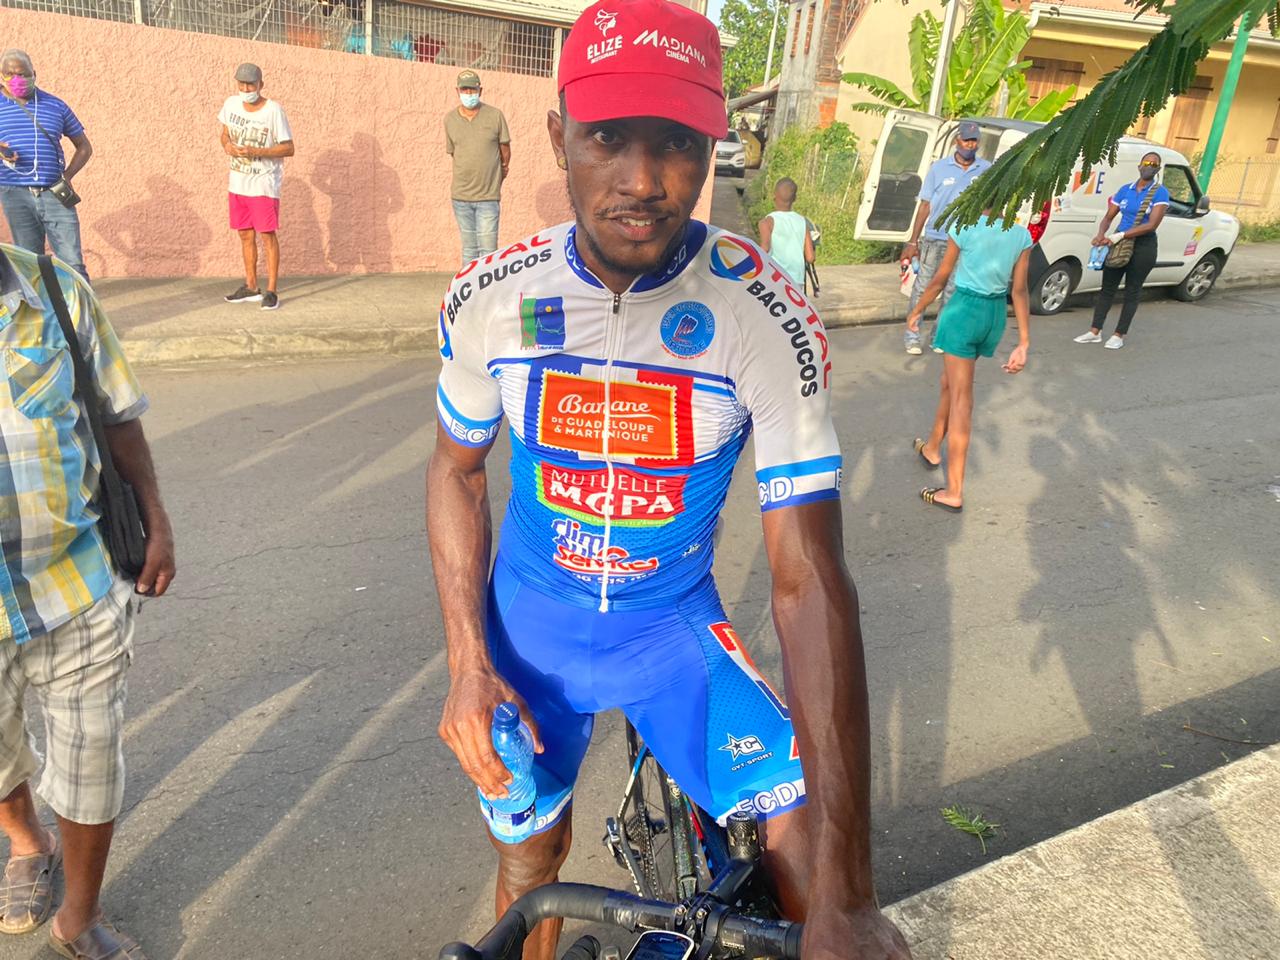     Thierry Ragot remporte la première étape de la route cycliste de Martinique

